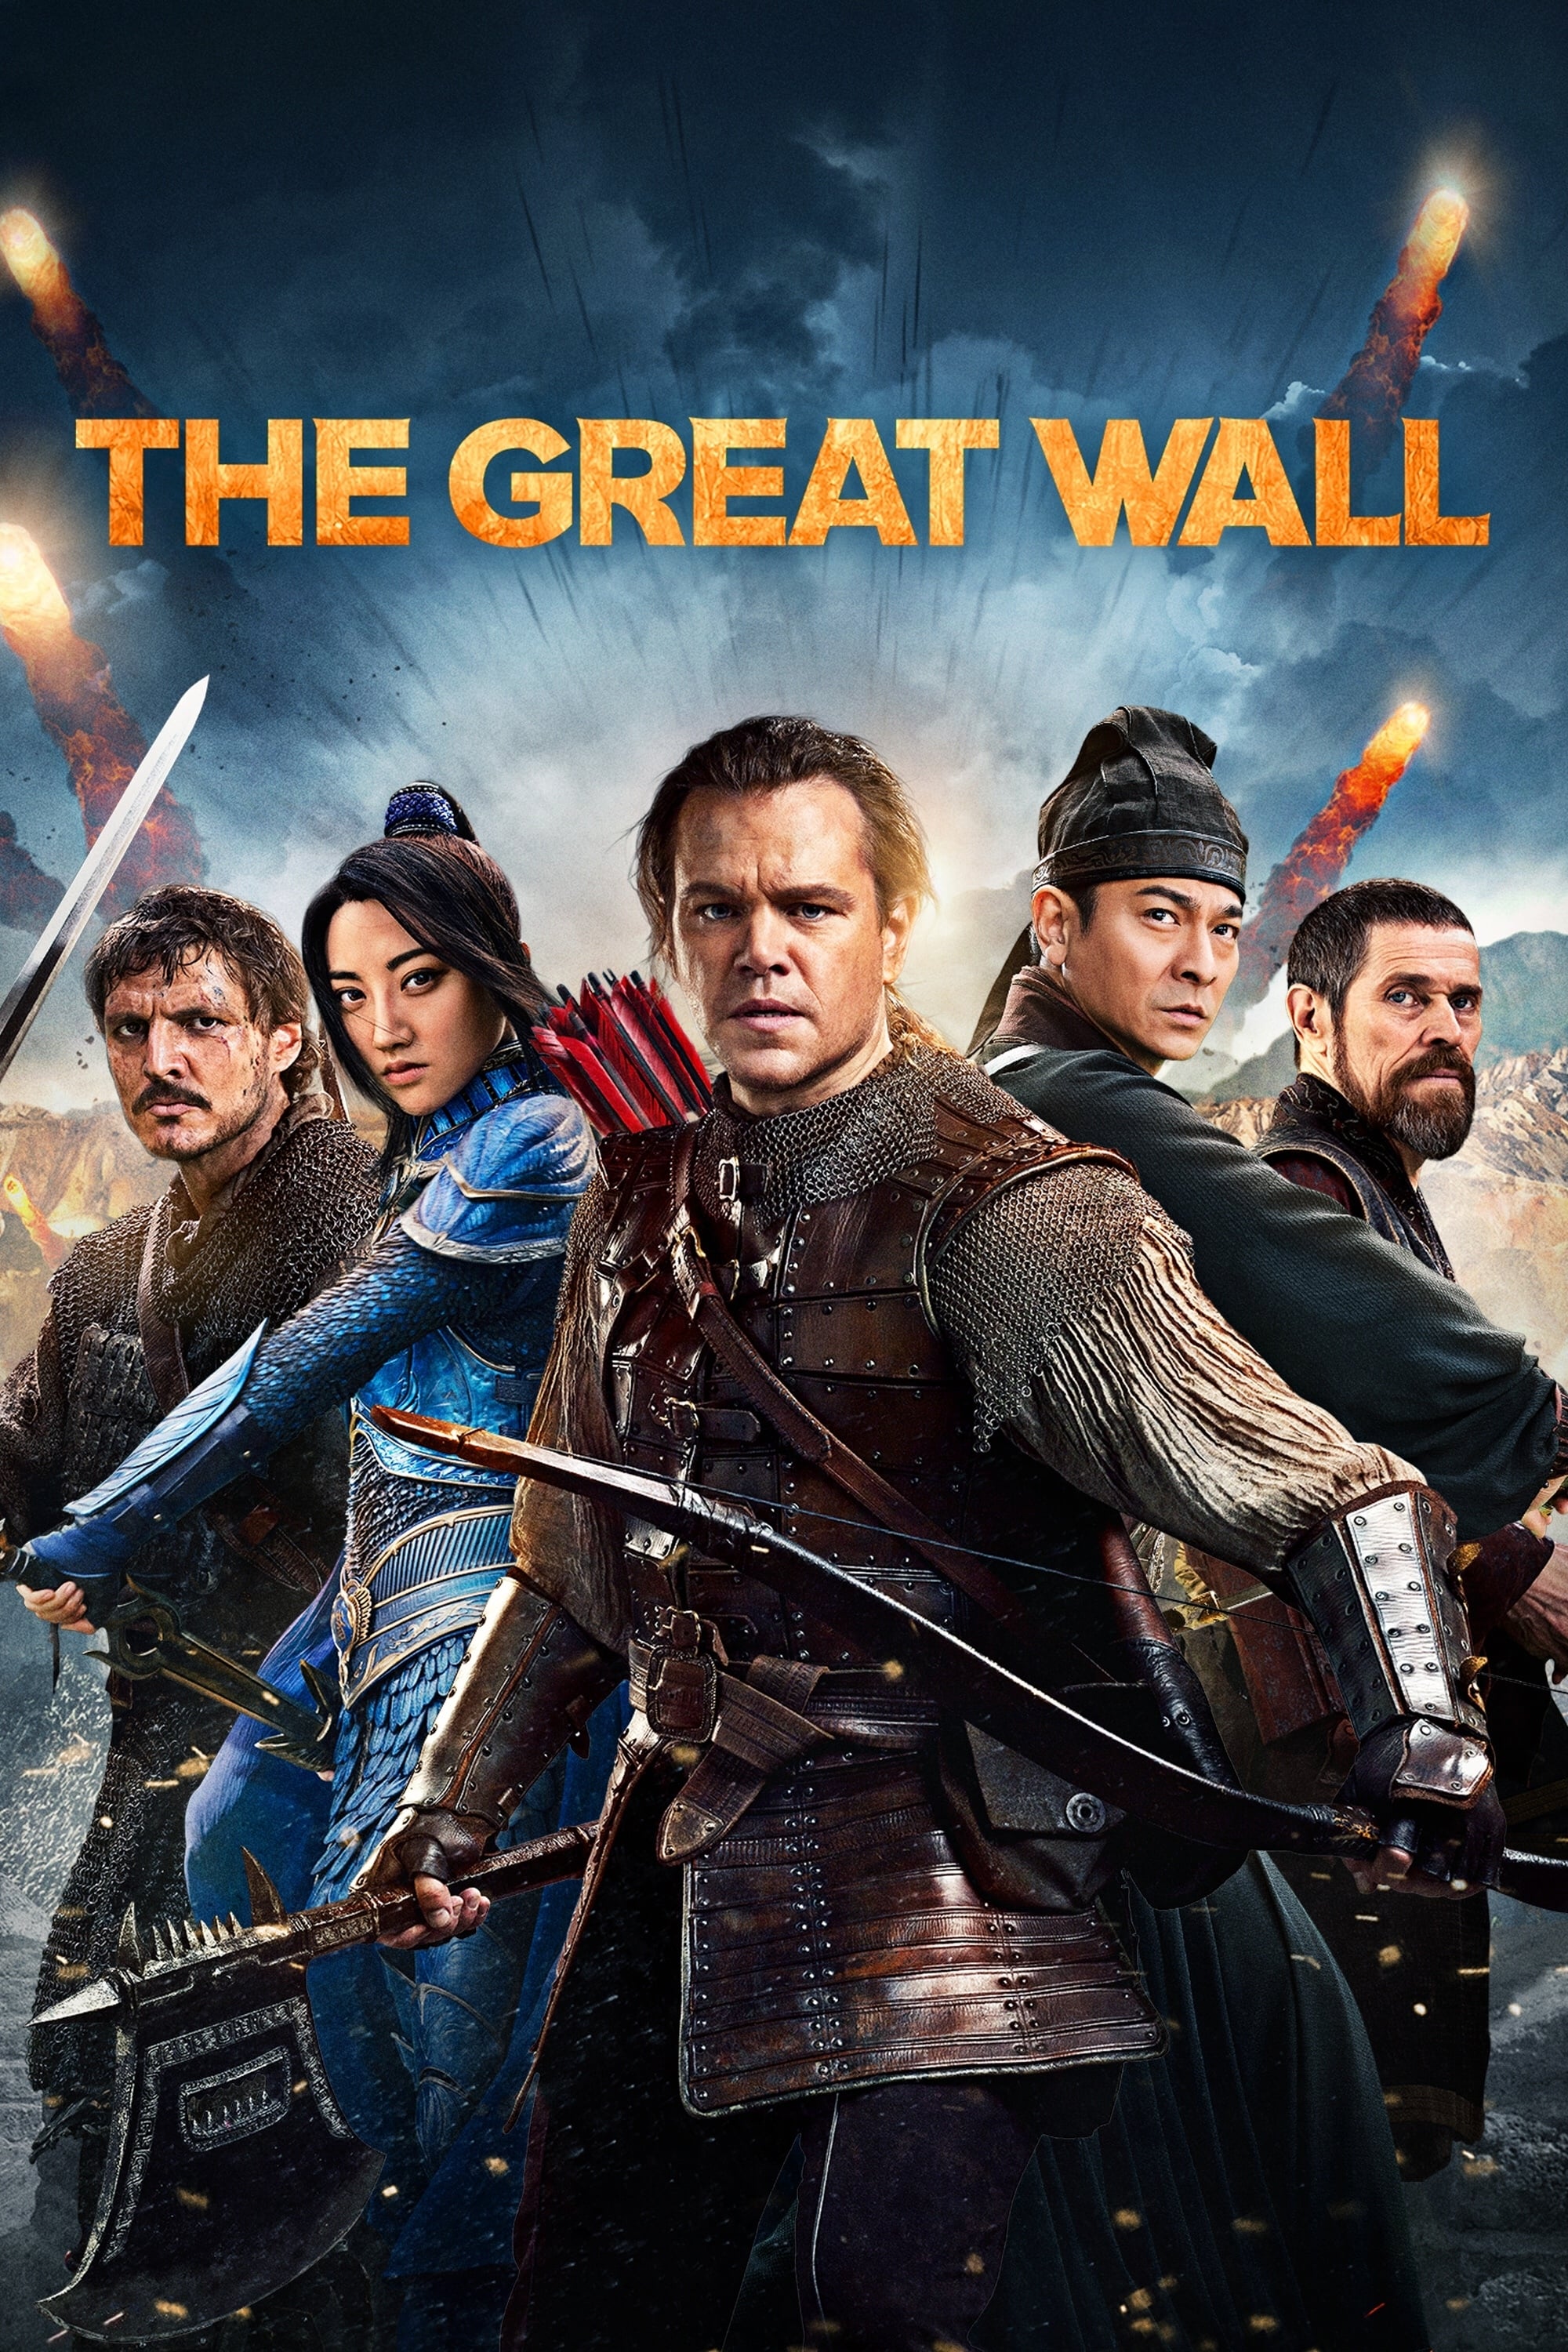 La Gran Muralla